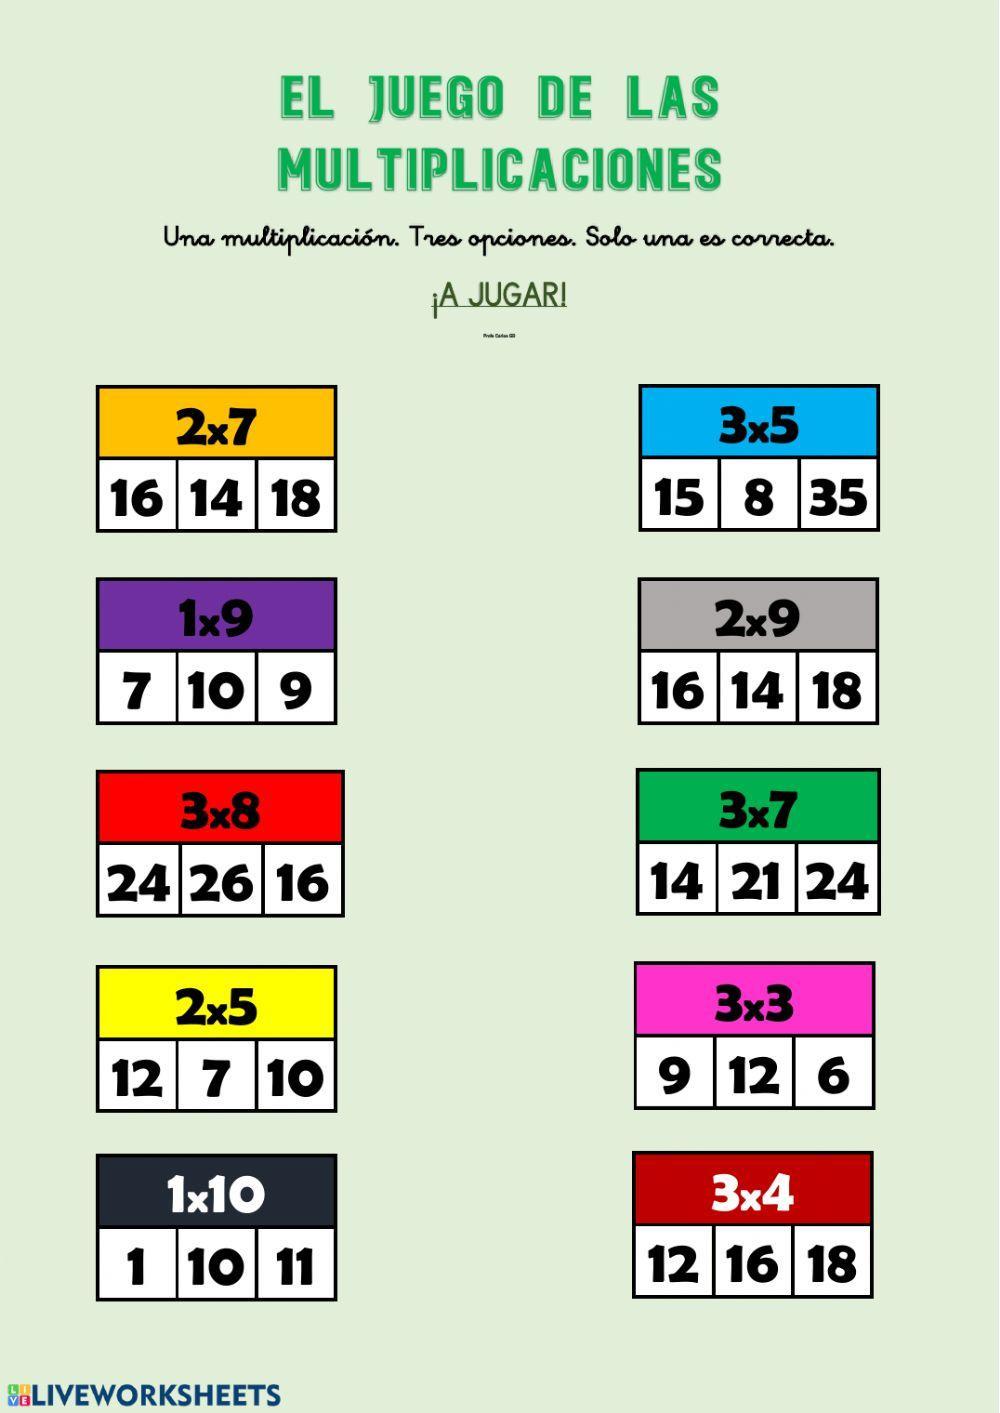 El juego de las multiplicaciones (1,2,3)